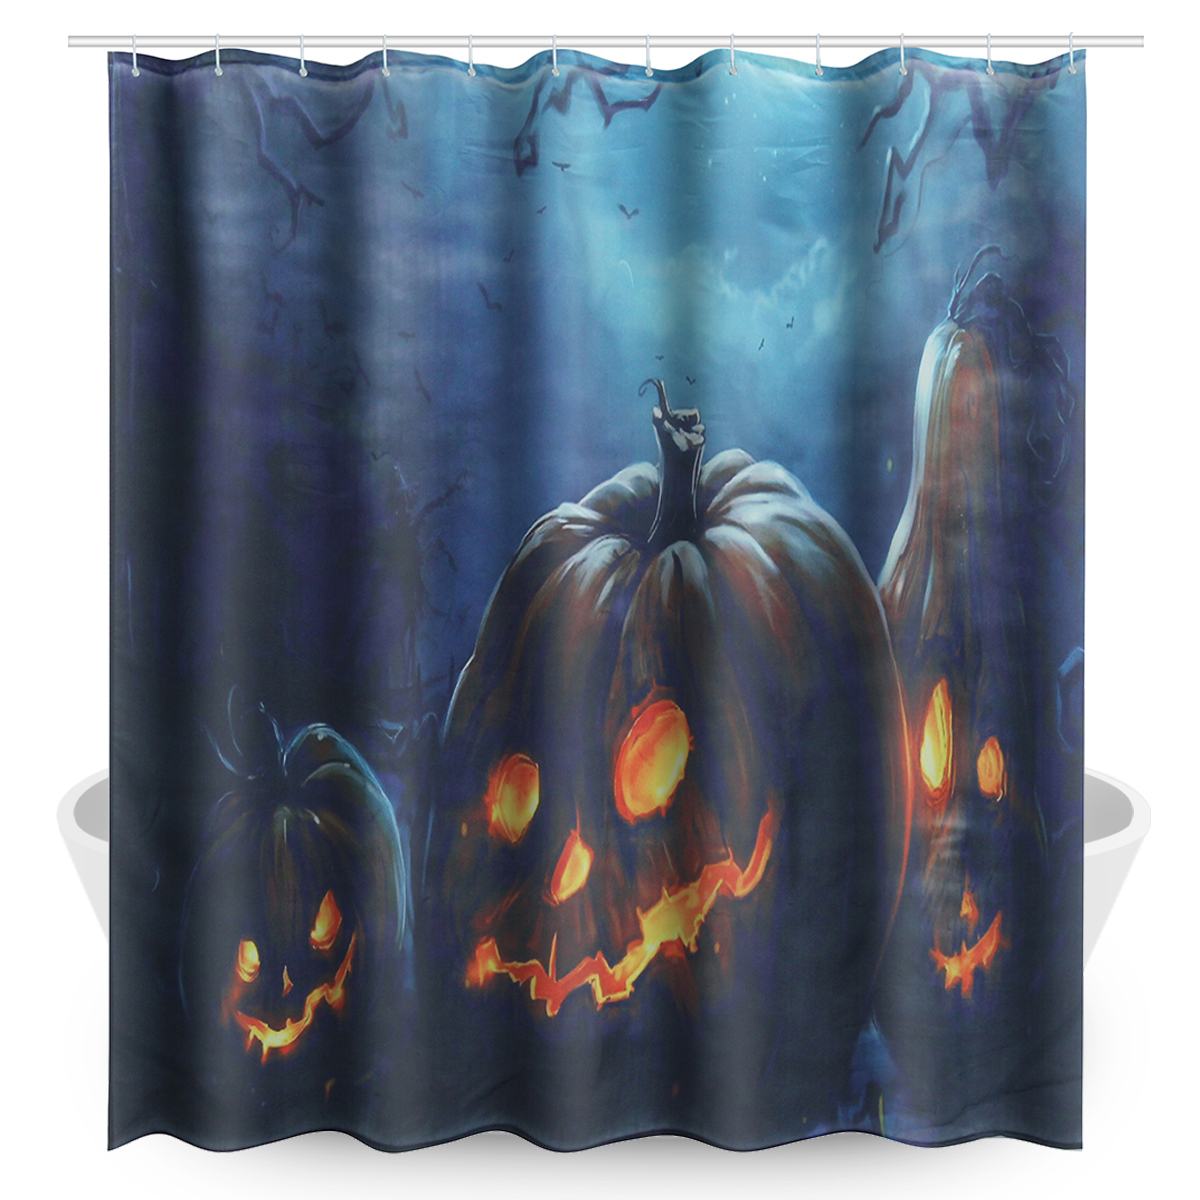 Dekoration Halloween Einzigartig 71 X71 Halloween Bathroom Decor Underwater Waterproof Shower Curtains Pattern Halloweentrees